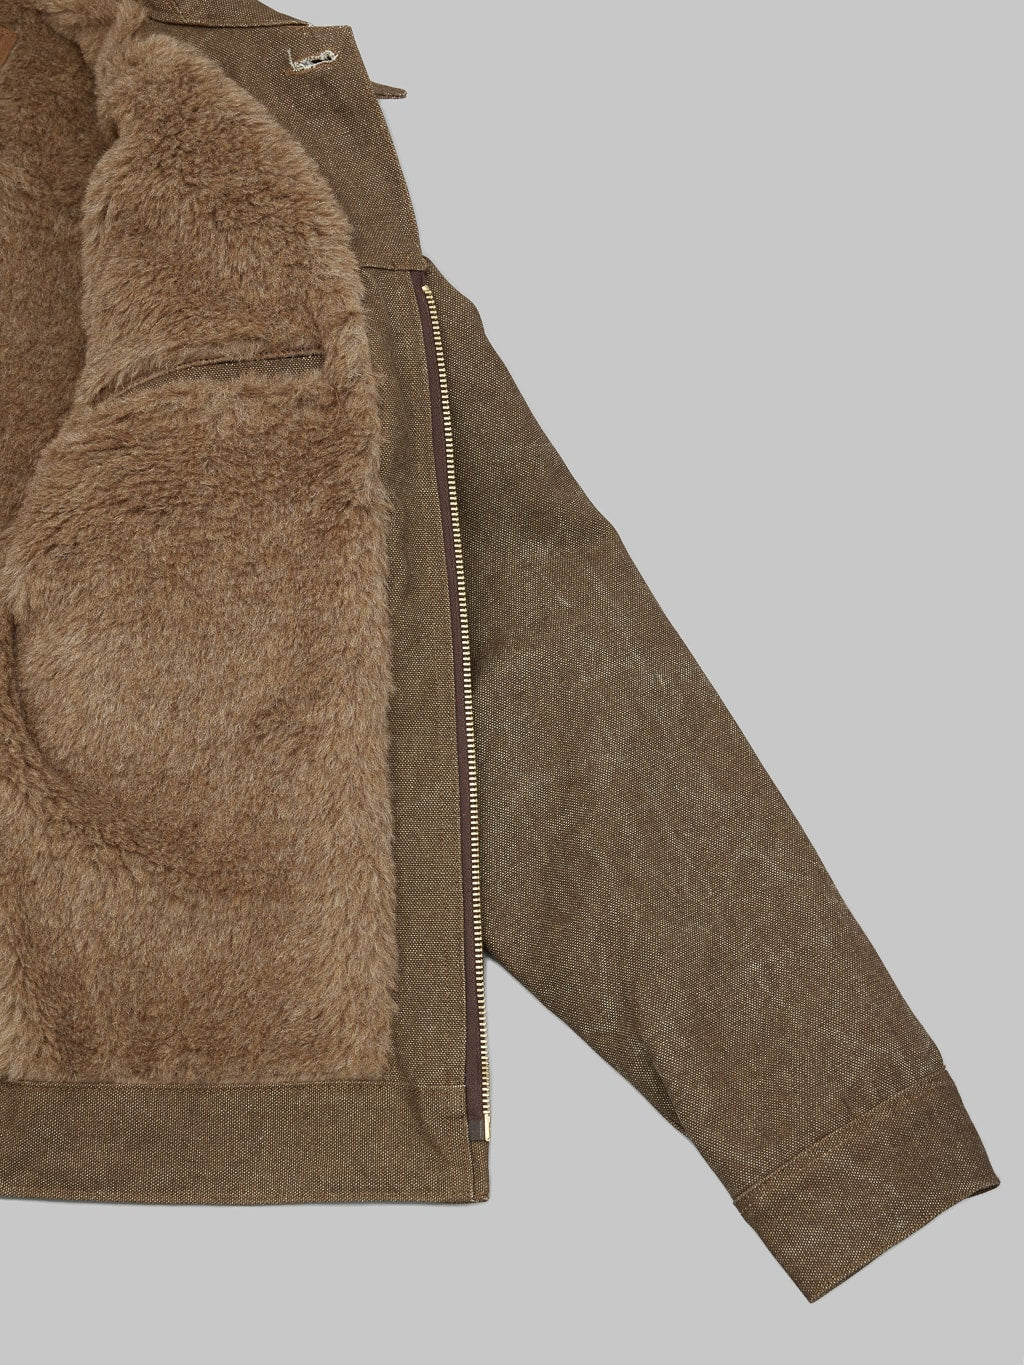 Freenote Cloth CD 4 Jacket Brown alpaca interior